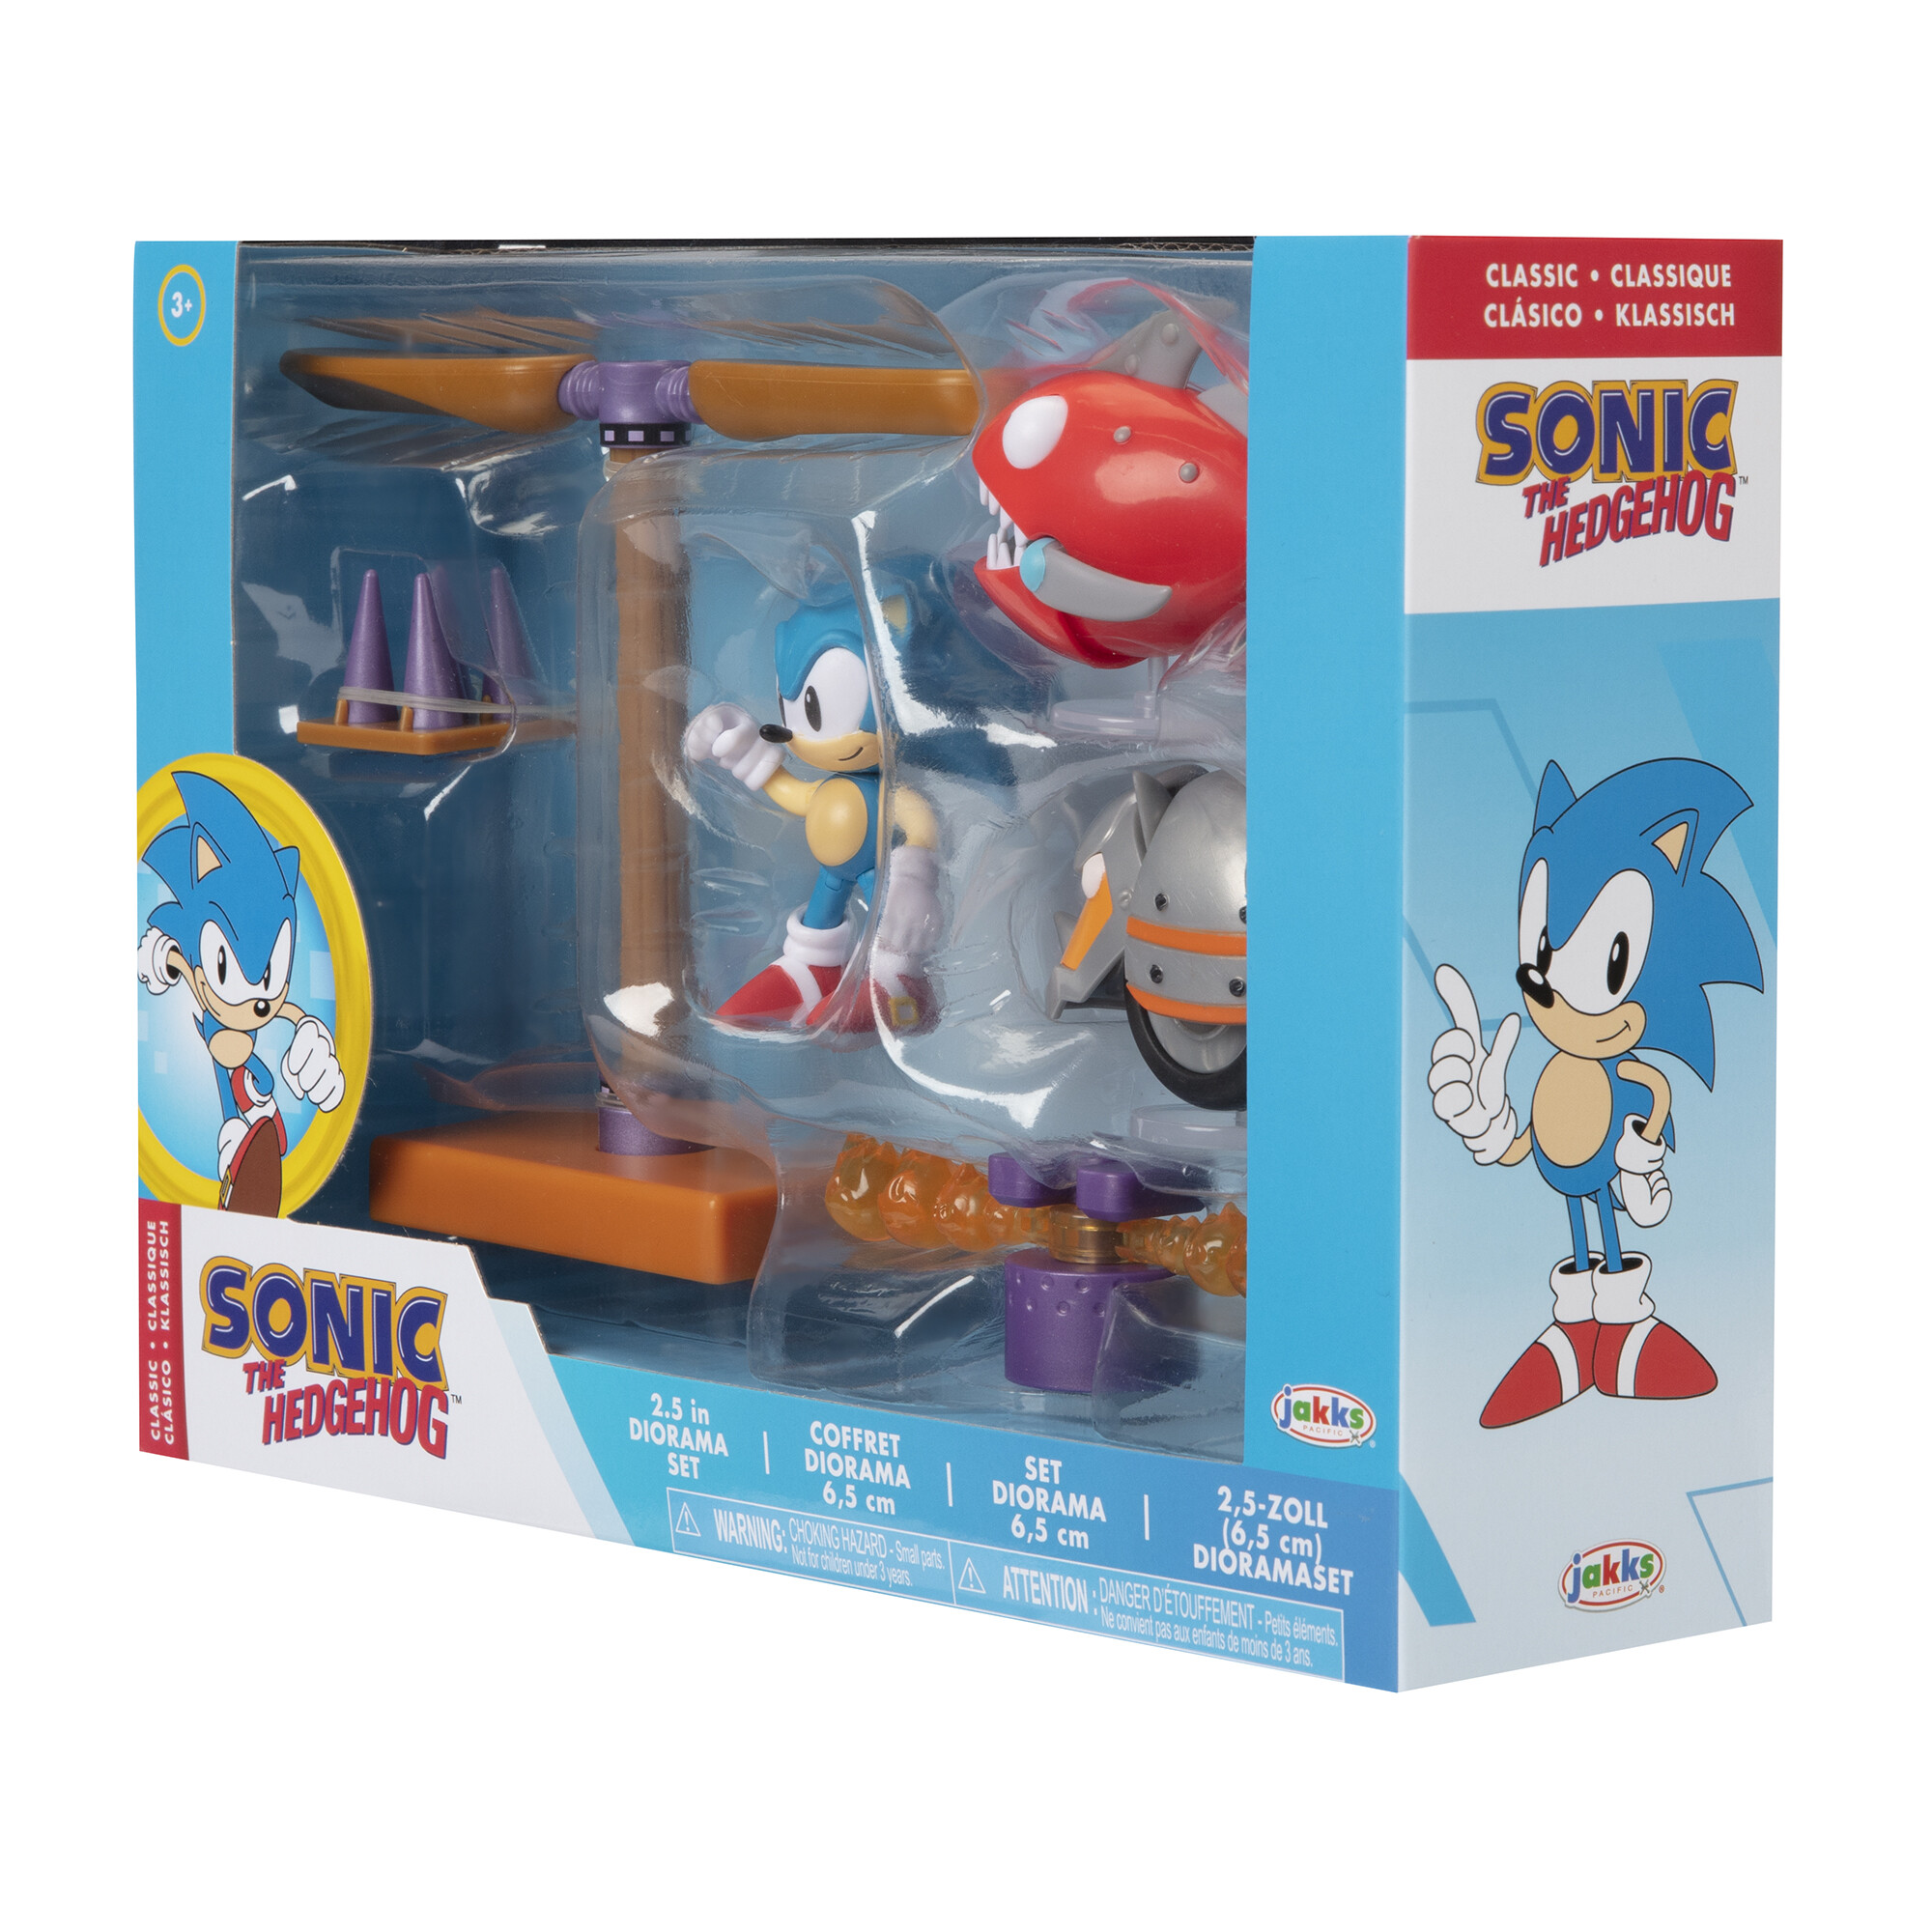 Sonic diorama flying battery zone. con personaggi da 6 cm inclusi! - Sonic